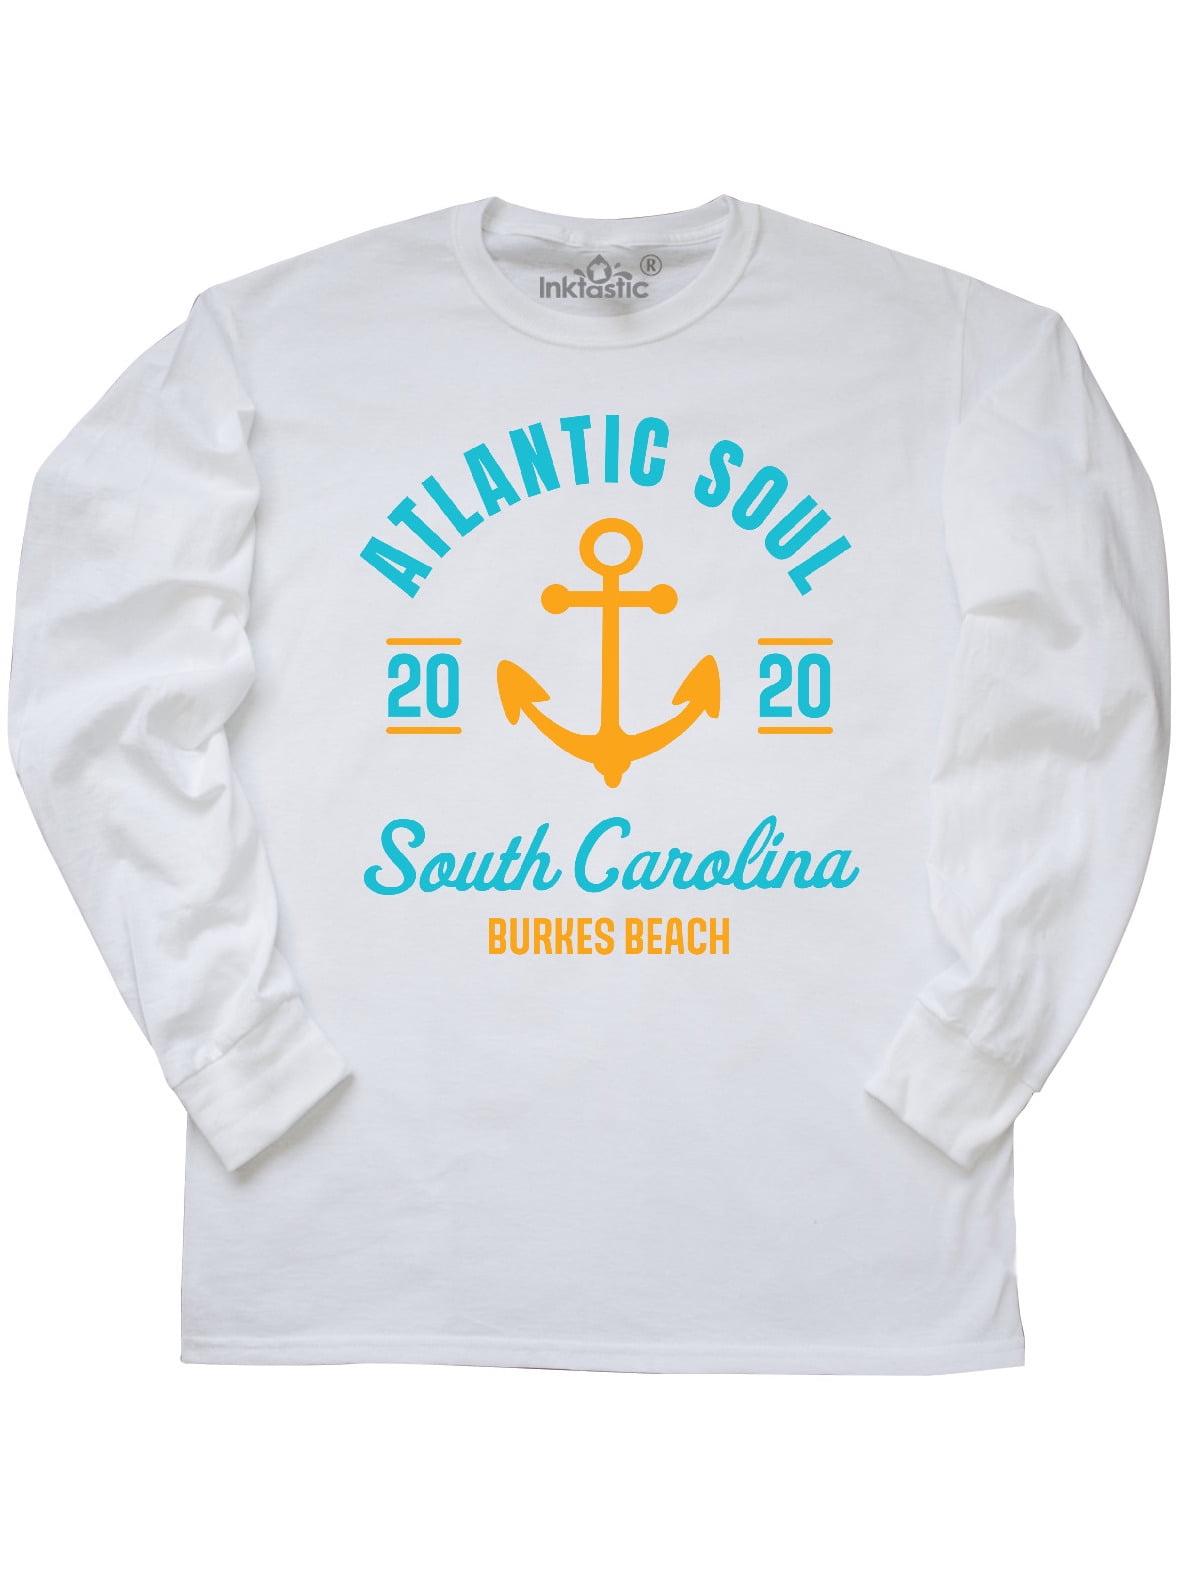 inktastic Atlantic Soul South Carolina Burkes Beach 2020 Long Sleeve Creeper 